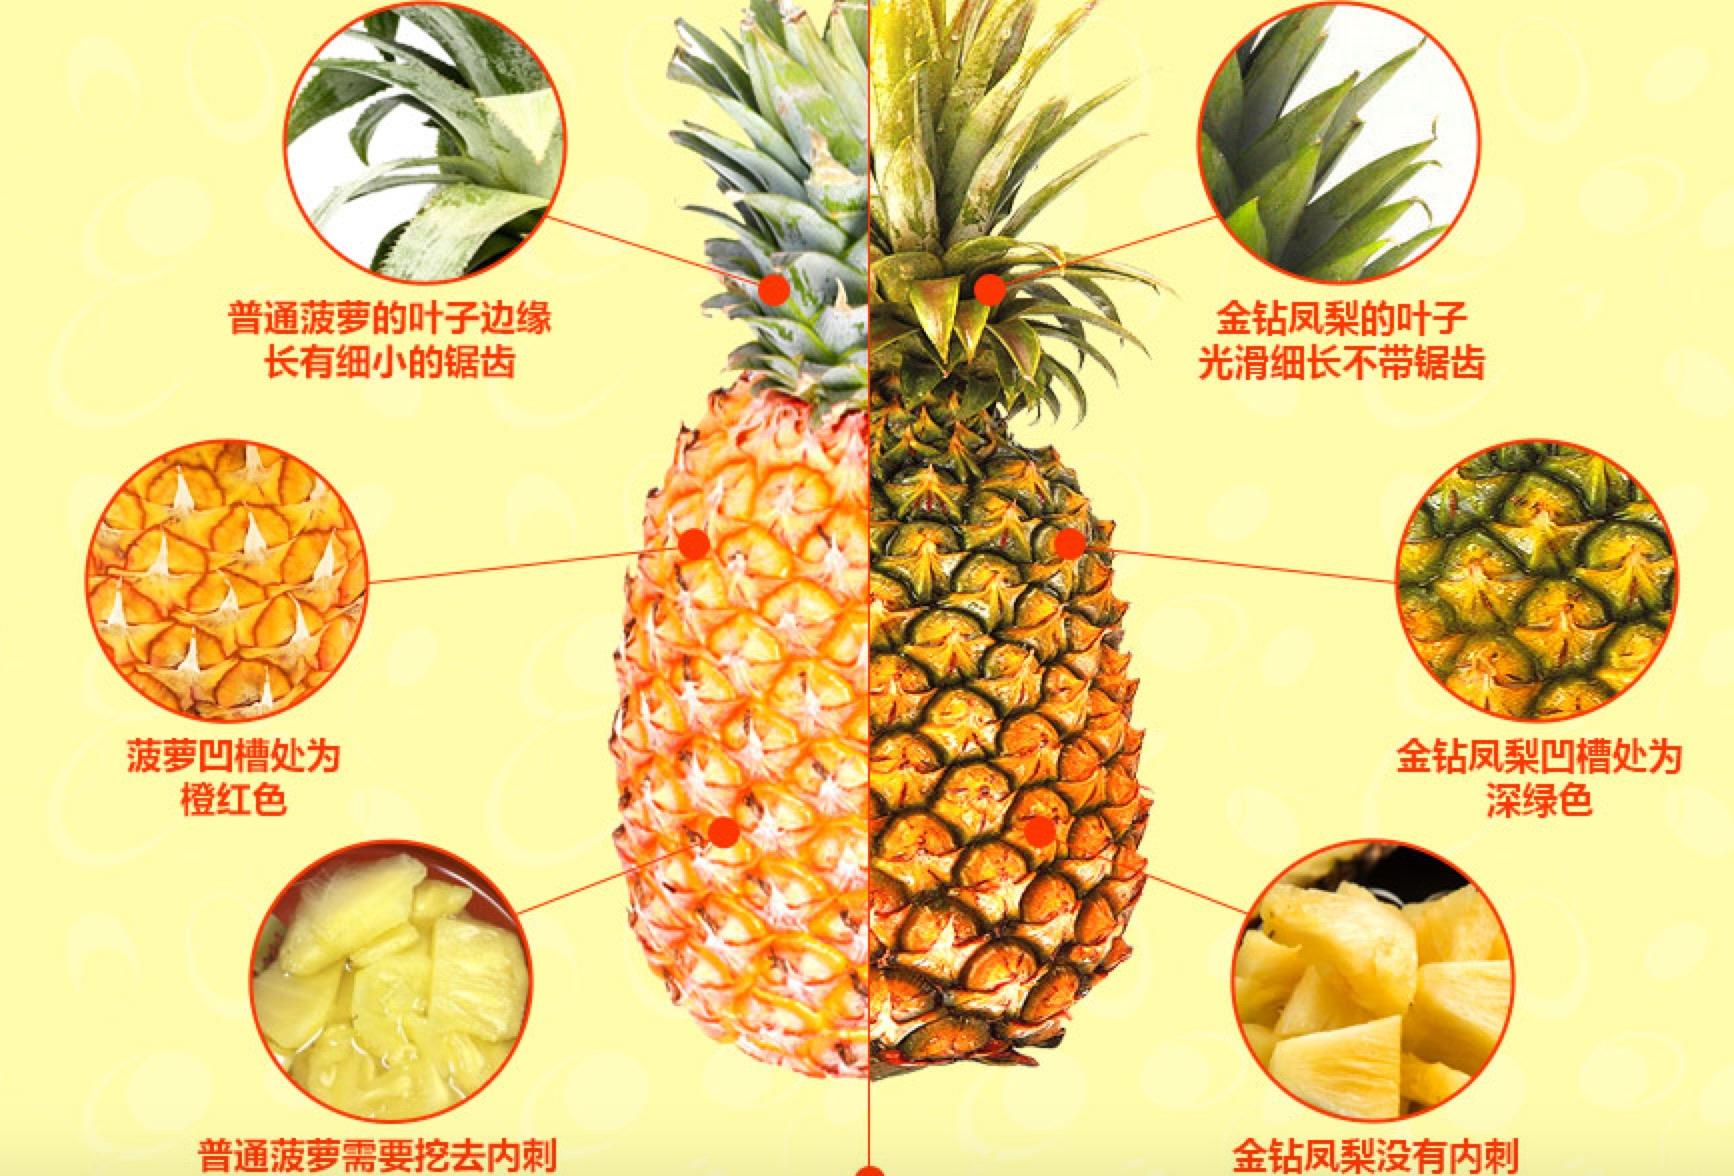 菠萝和凤梨的终极区别 你还在把凤梨当菠萝吗?